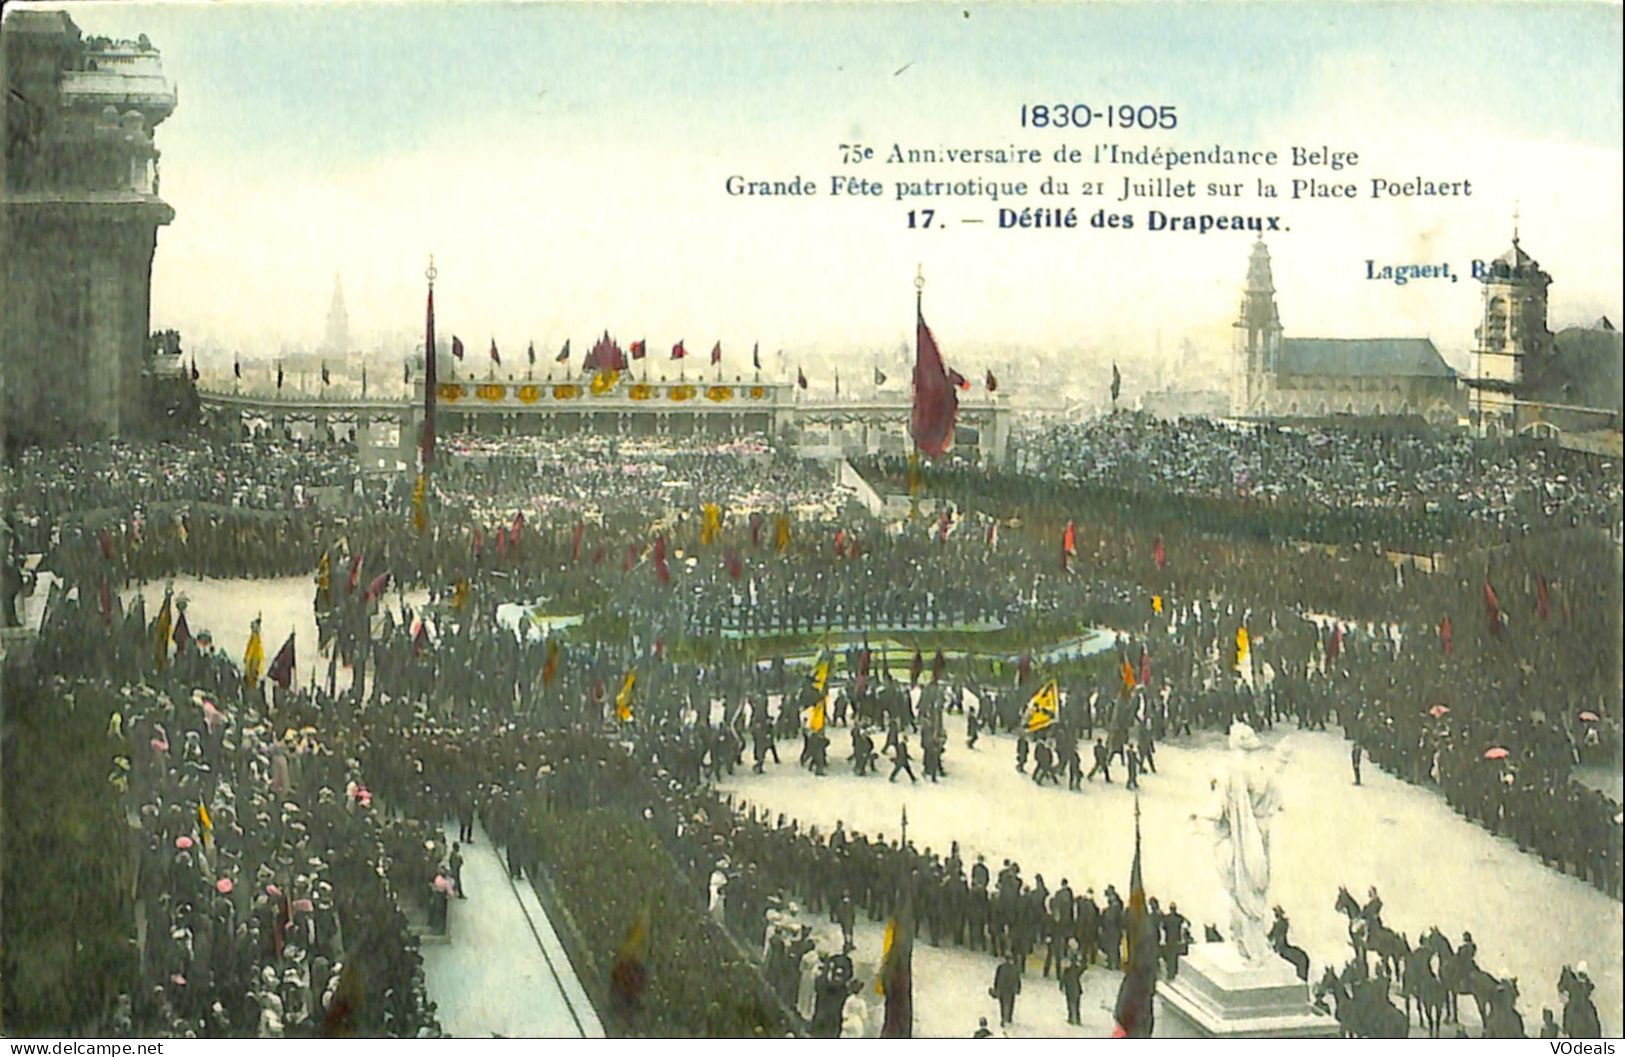 Belgique - Brussel - Bruxelles - 1805-1905 - 75e Anniversaire De L'Indépendance Belge - Défilé Des Drapeaux - Fêtes, événements